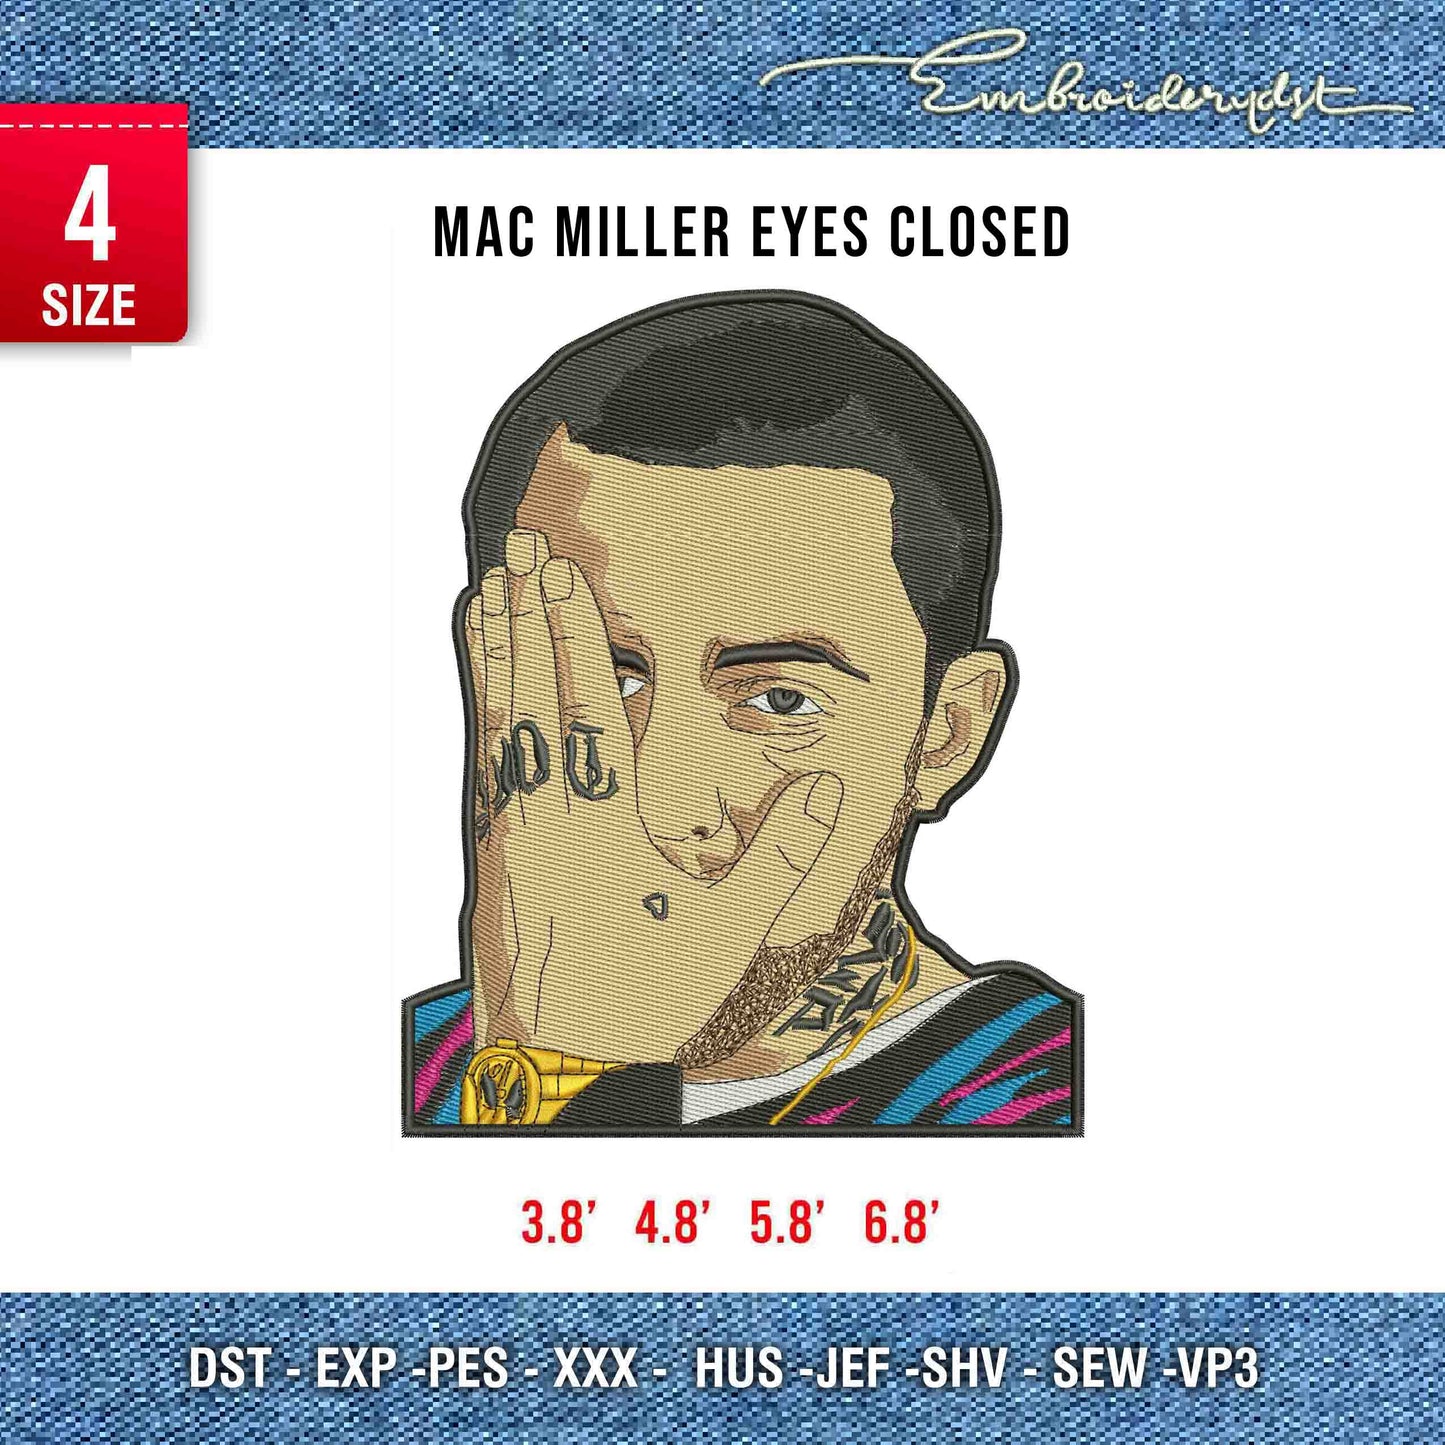 Mac Miller eyes closed